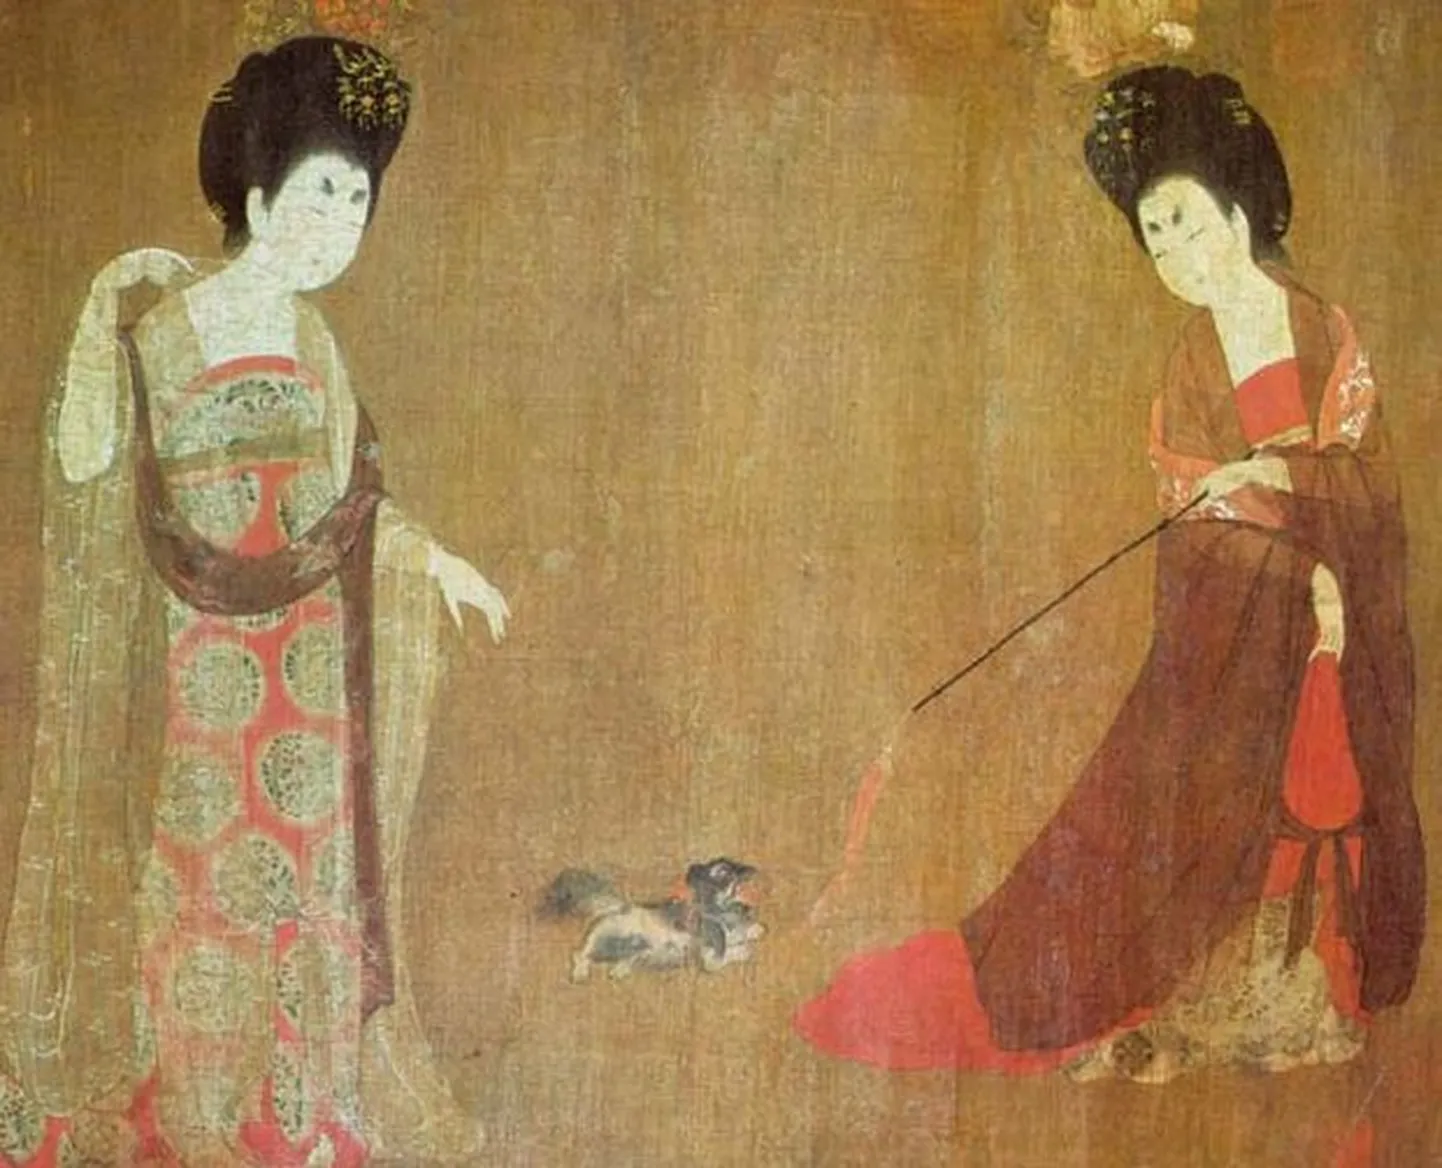 8. sajandist pärit maal, millel on kujutatud Tangi dünastia ajastu konkubiine